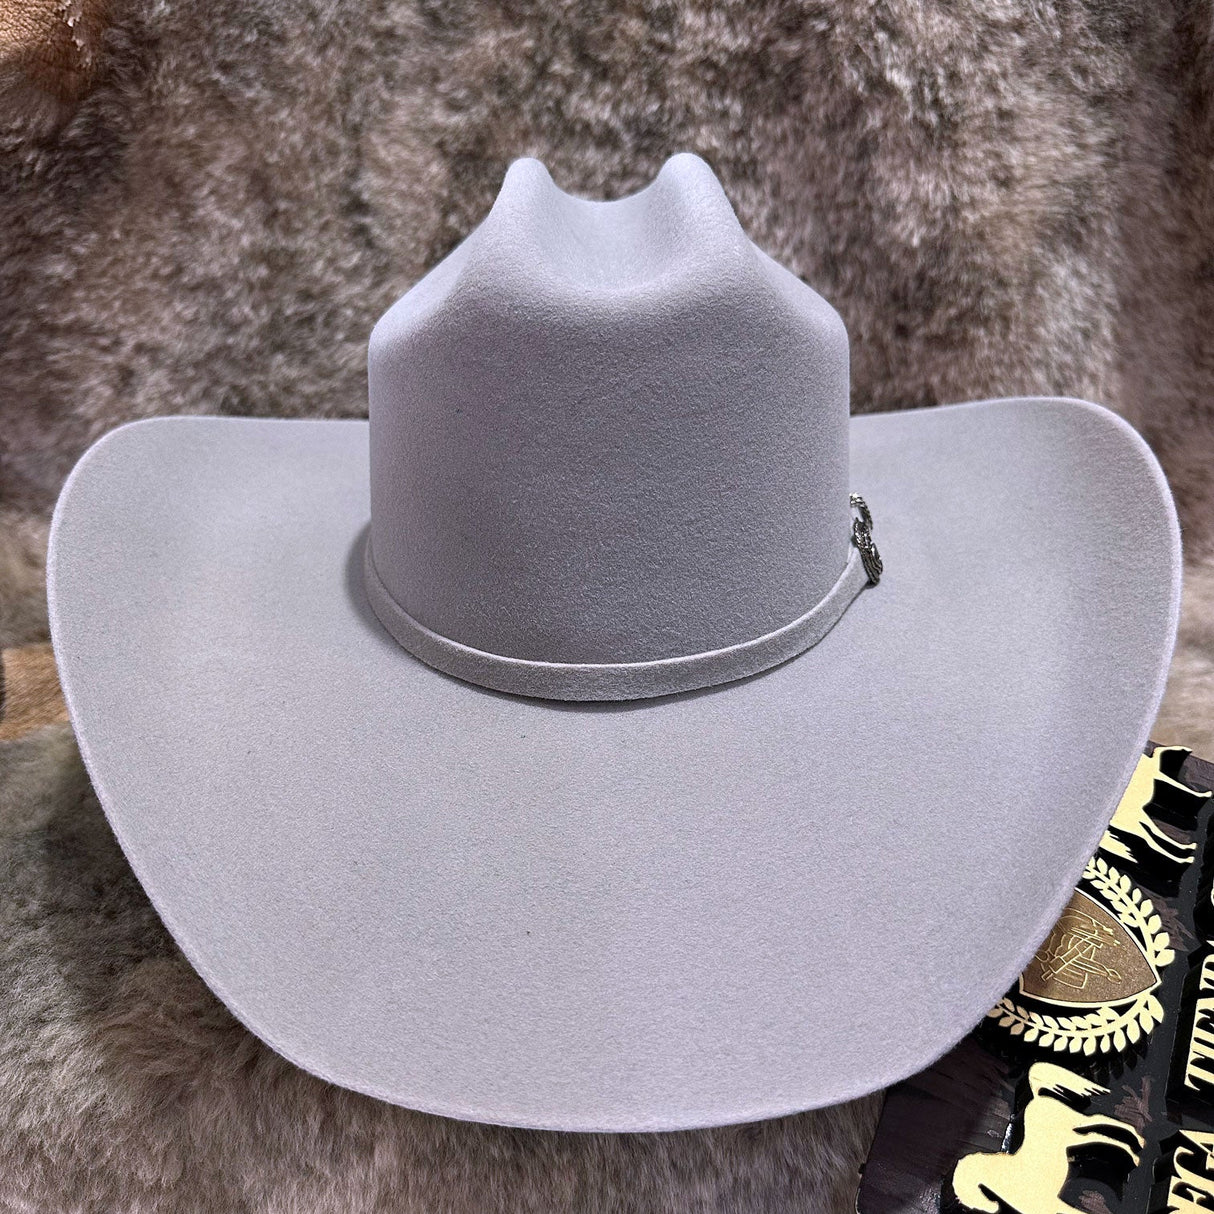 Texana Roper (color gris cristal) Tombstone - Tiendacharra.com - Bodega Tienda Charra